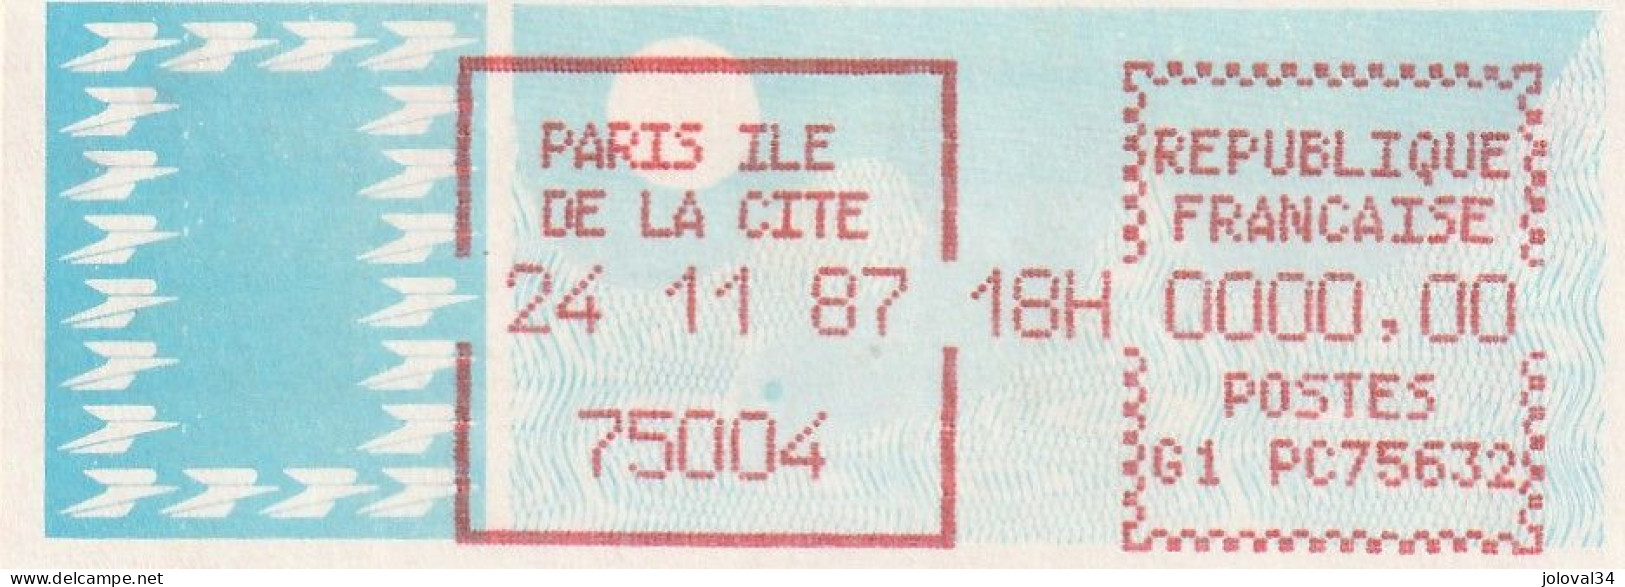 Vignette Papier Carrier - Essai PARIS ILE DE LA CITE 75004 24/11/87 - G1  PC 75632 - 1985 « Carrier » Paper